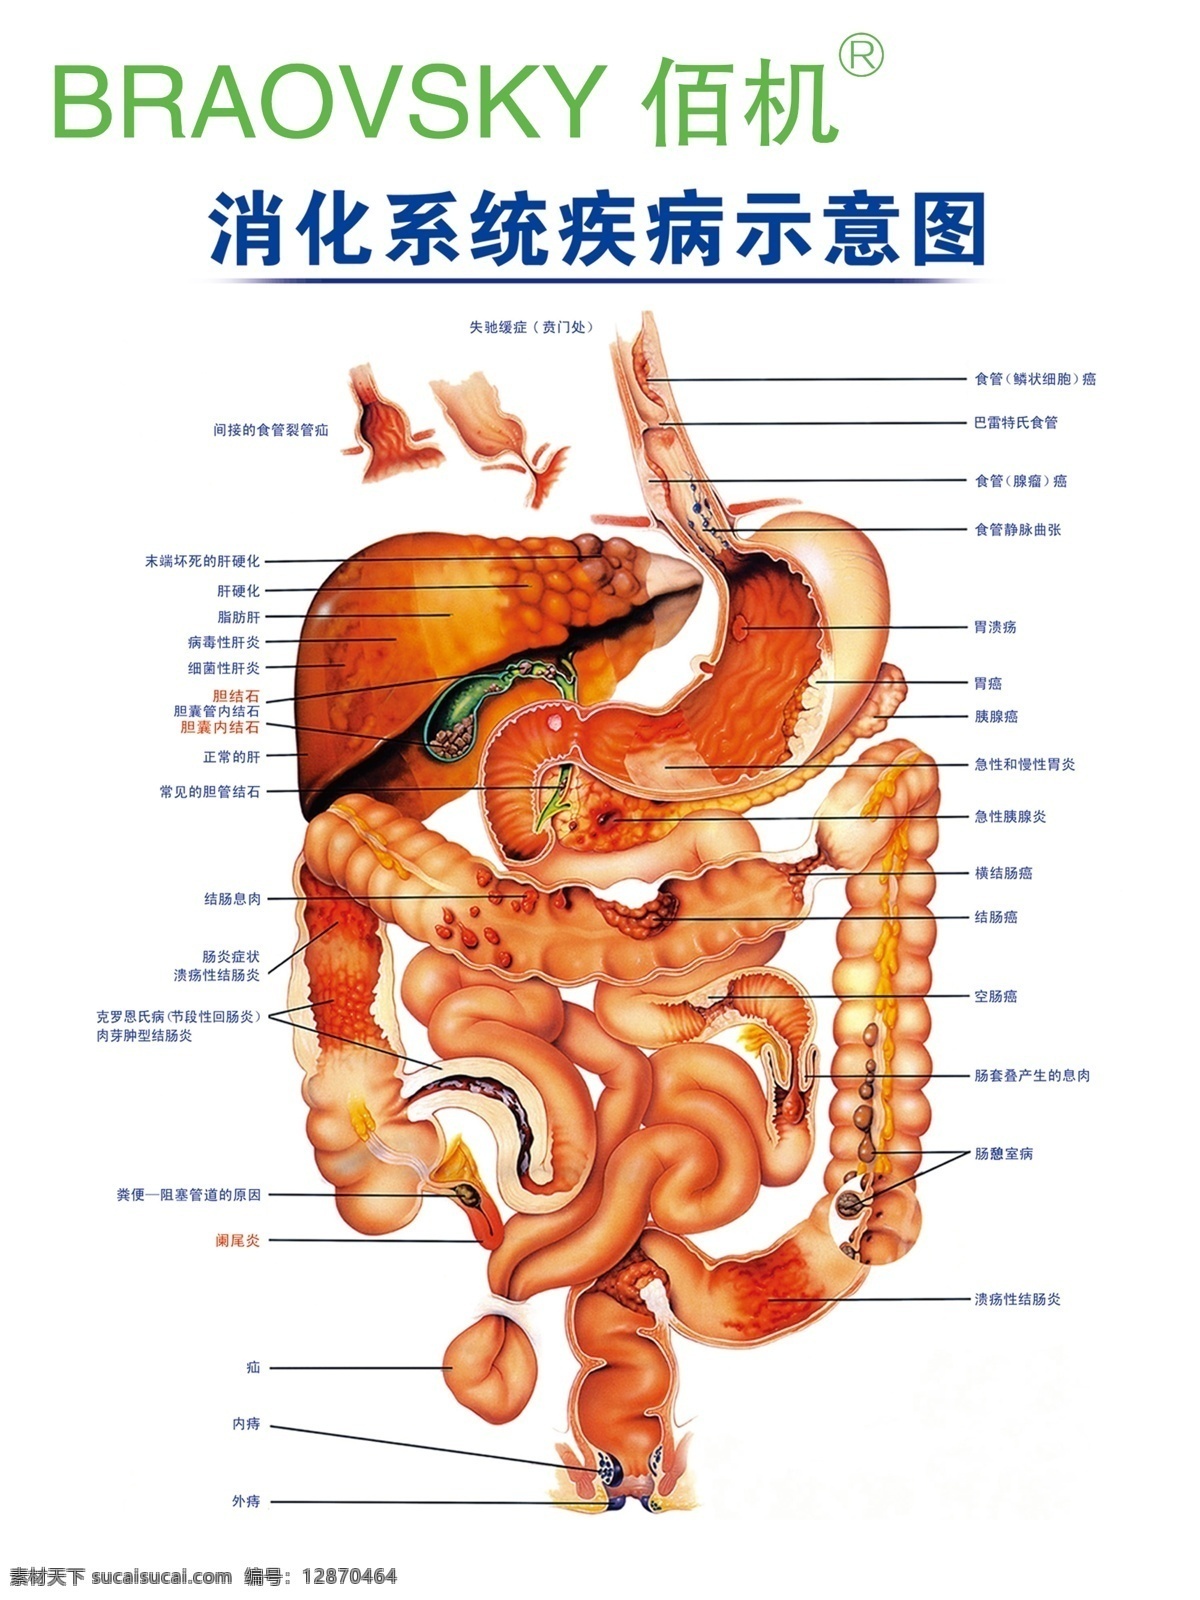 肠道 蠕动 大肠 小肠 演示 人体 医疗 医学 器官 消化 消化系统 排便 排毒 疗效